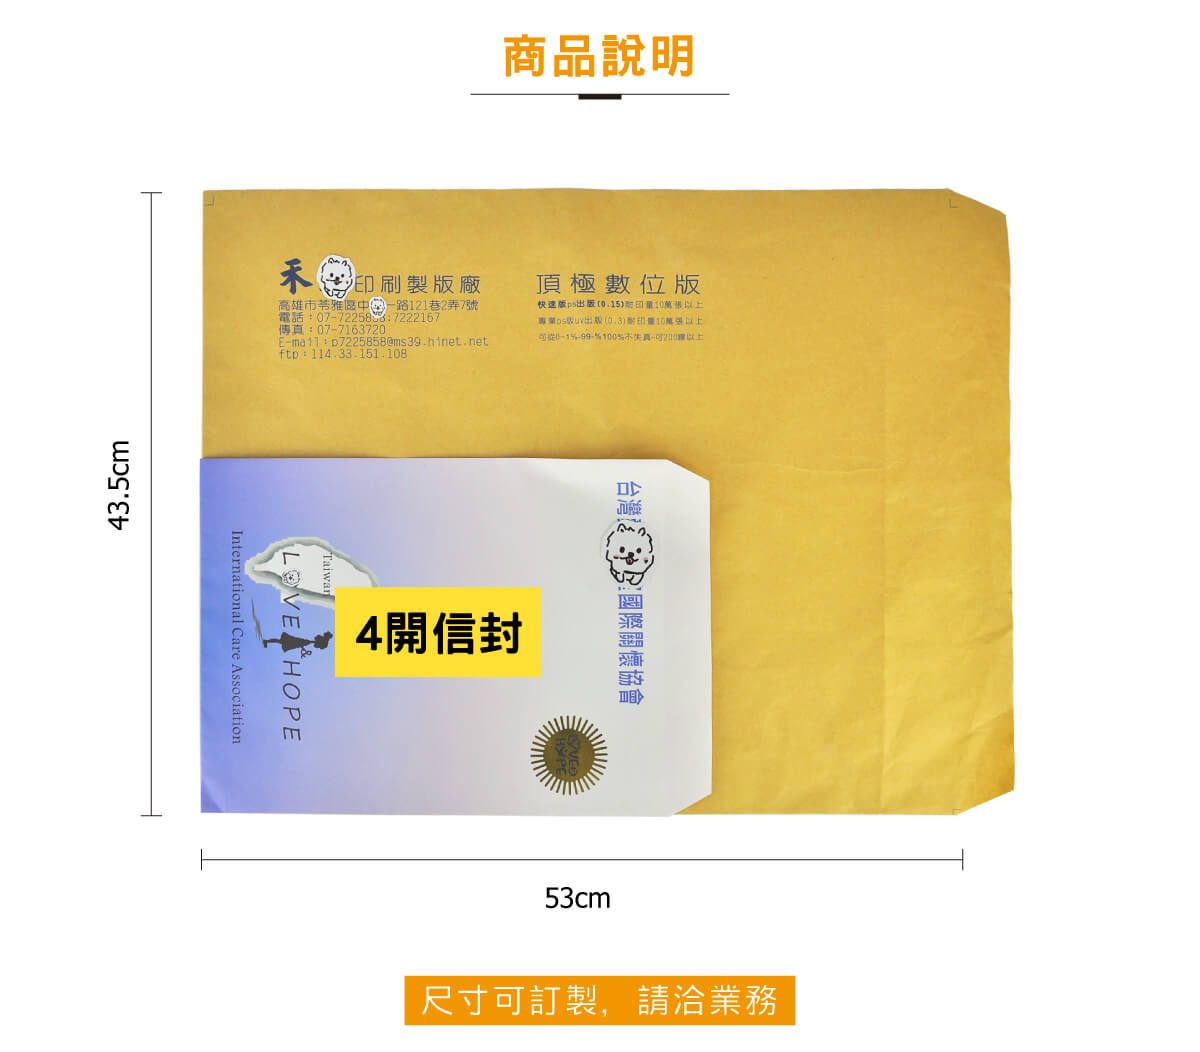 中式訂製信封 超大信封 大尺寸信封 特殊信封 特規信封 設計印刷 客製 訂製 定制 高雄印刷